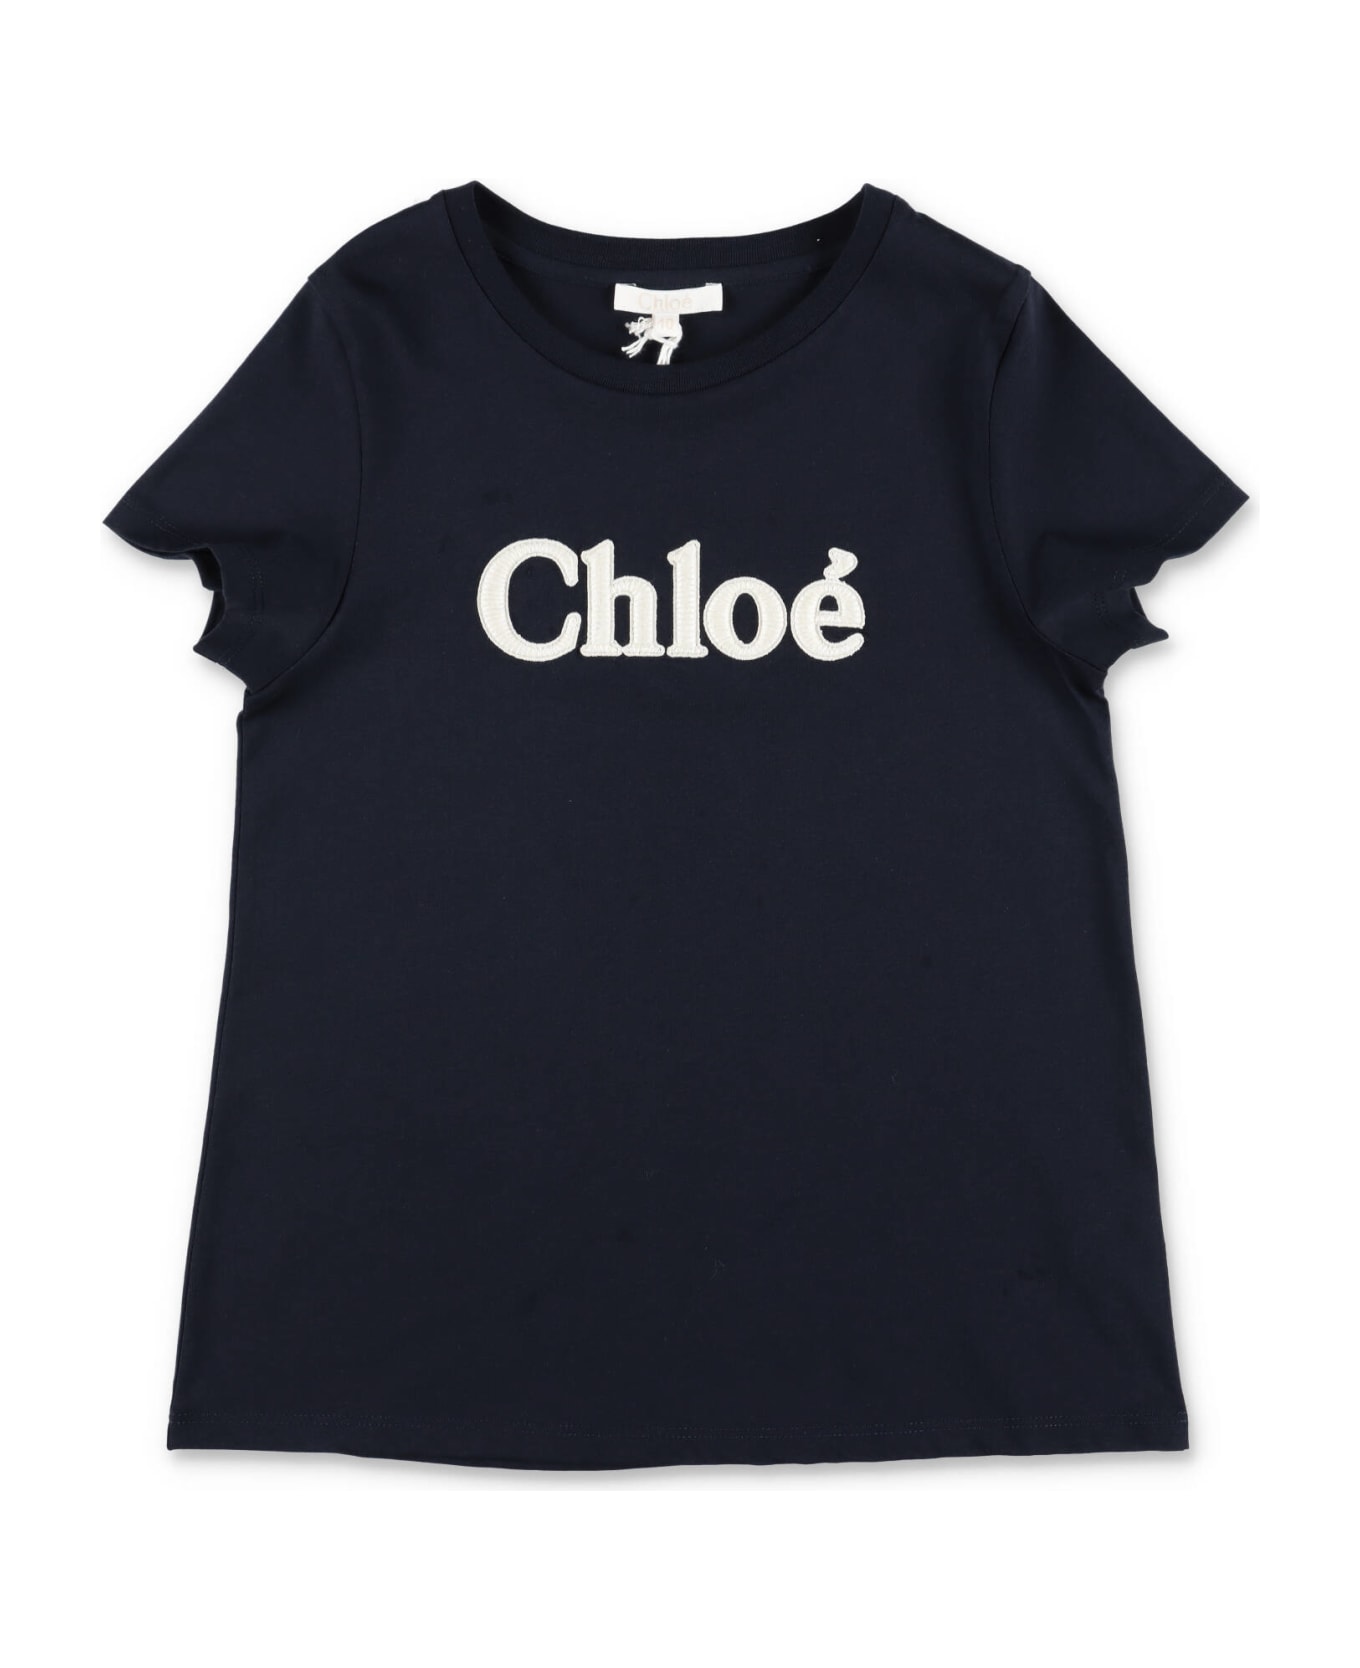 Chloé Chloe T-shirt Blu Navy In Jersey Di Cotone Bambina - Blu